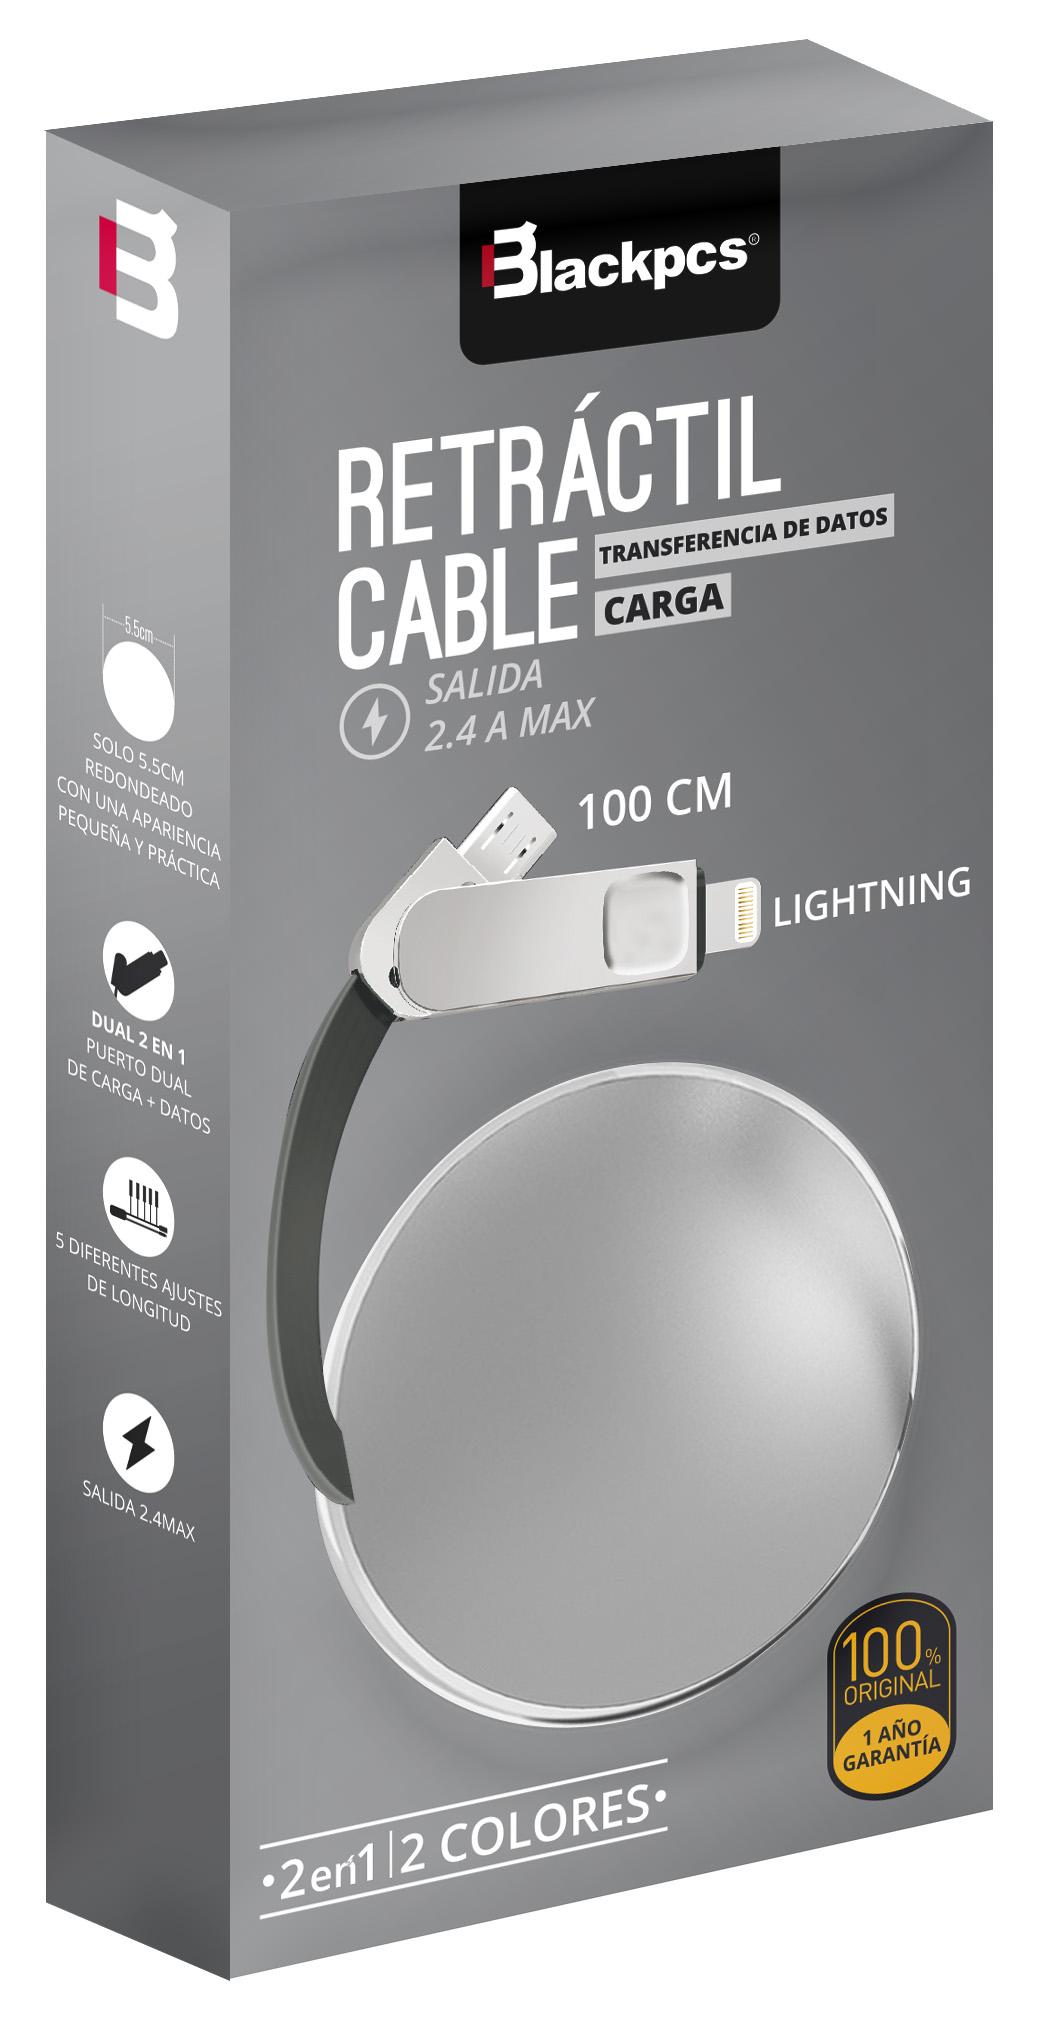  Ob  Cable Blackpcs  Ca Retractil  V8 Lightning Plata 100 Cm 2 1A  Casmlpr  - BLACKPCS